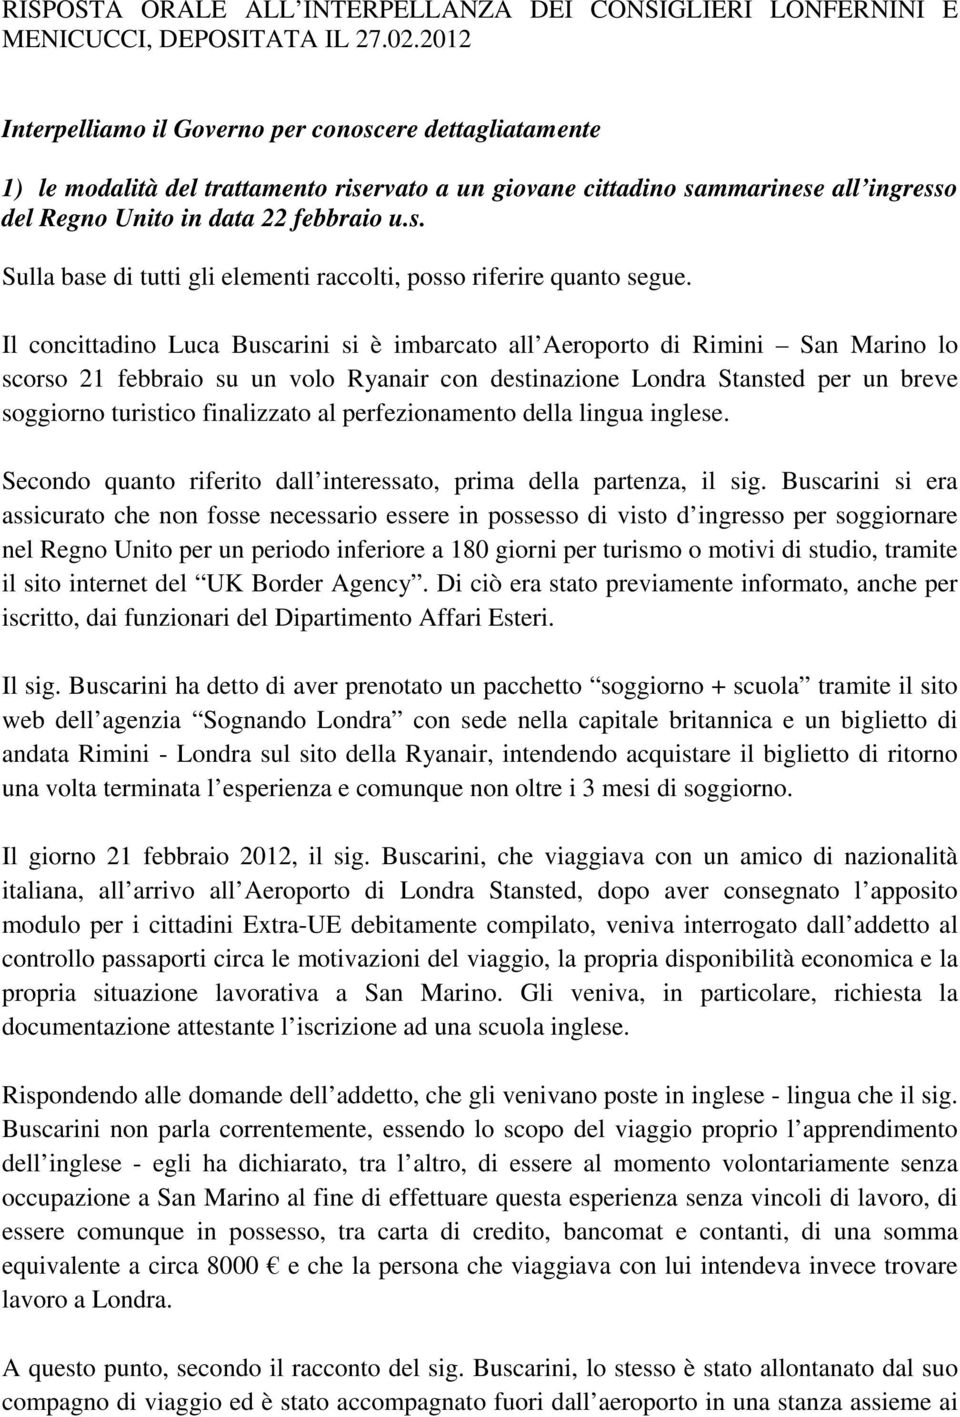 Il concittadino Luca Buscarini si è imbarcato all Aeroporto di Rimini San Marino lo scorso 21 febbraio su un volo Ryanair con destinazione Londra Stansted per un breve soggiorno turistico finalizzato